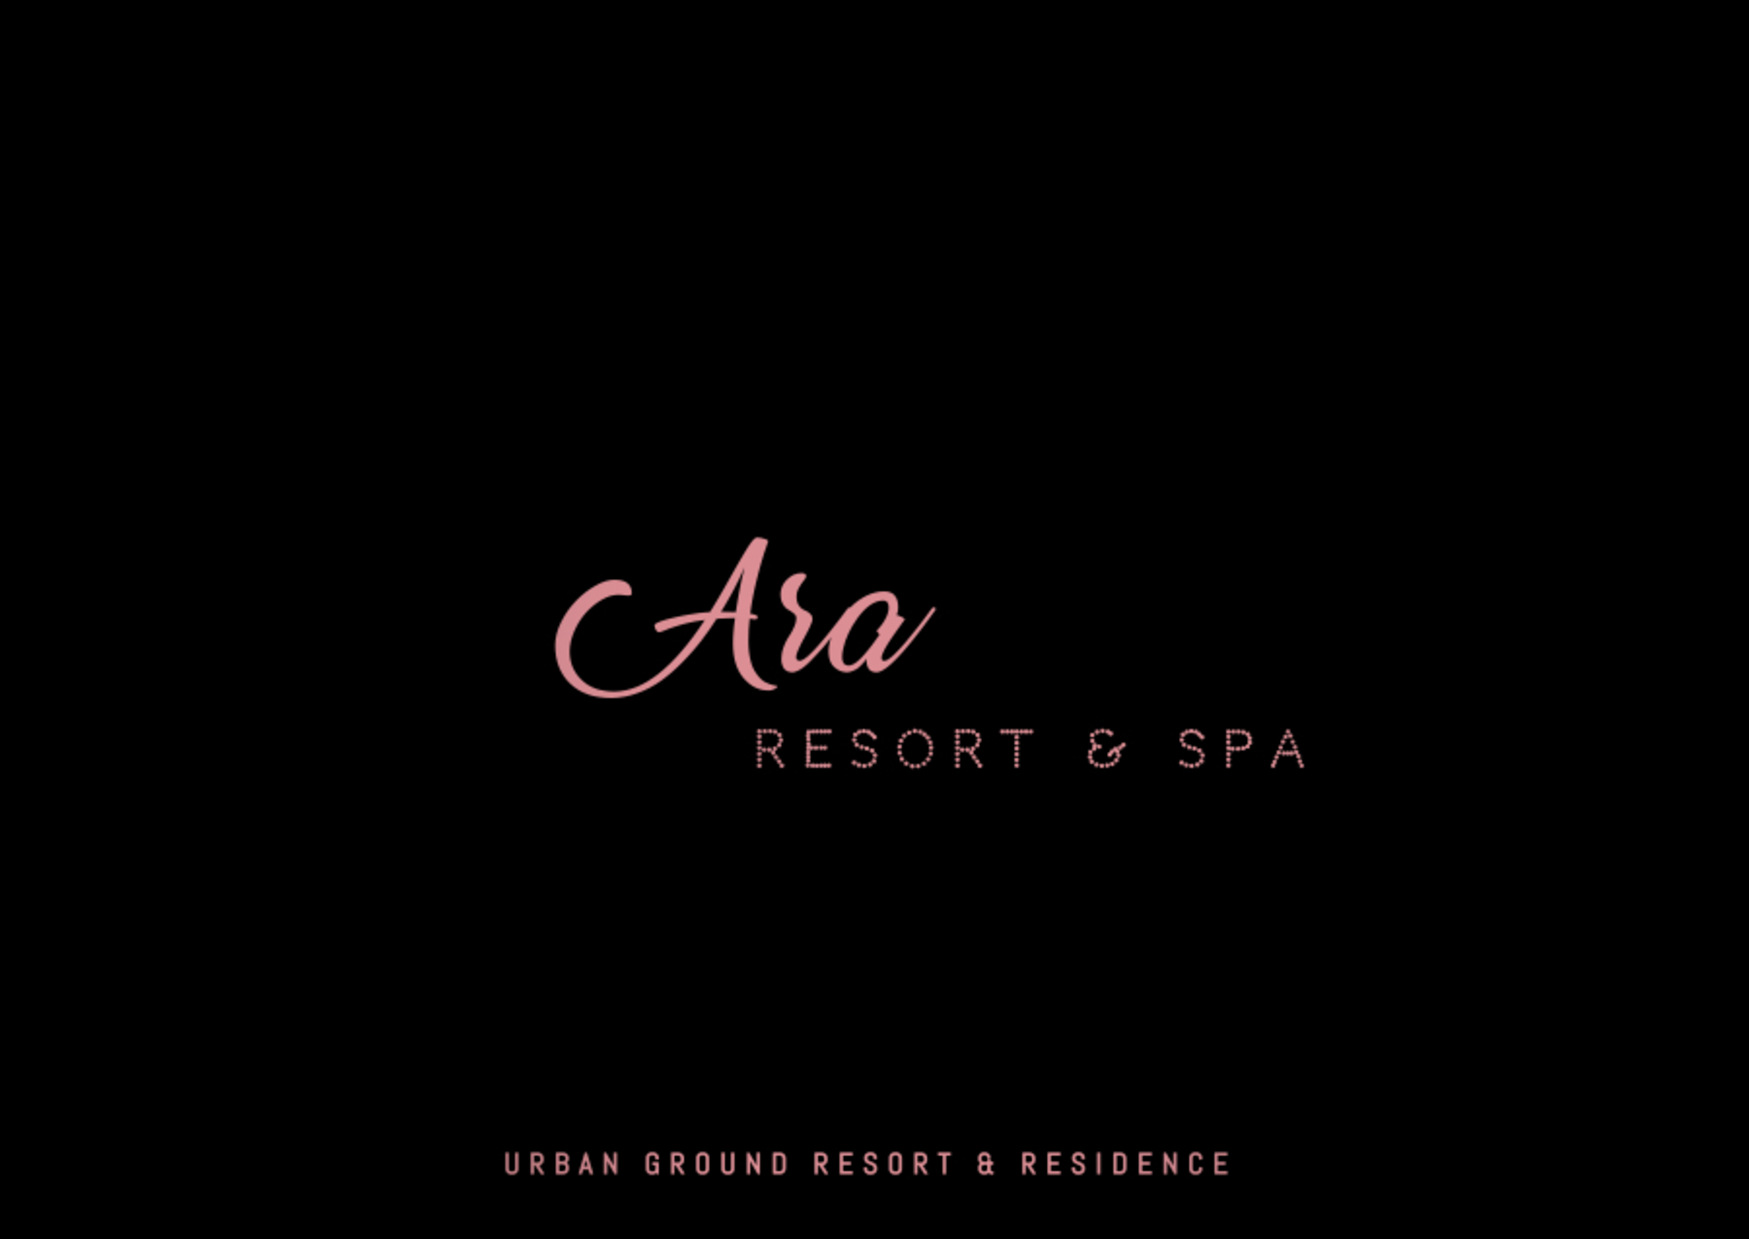 Ara Resort & Spa